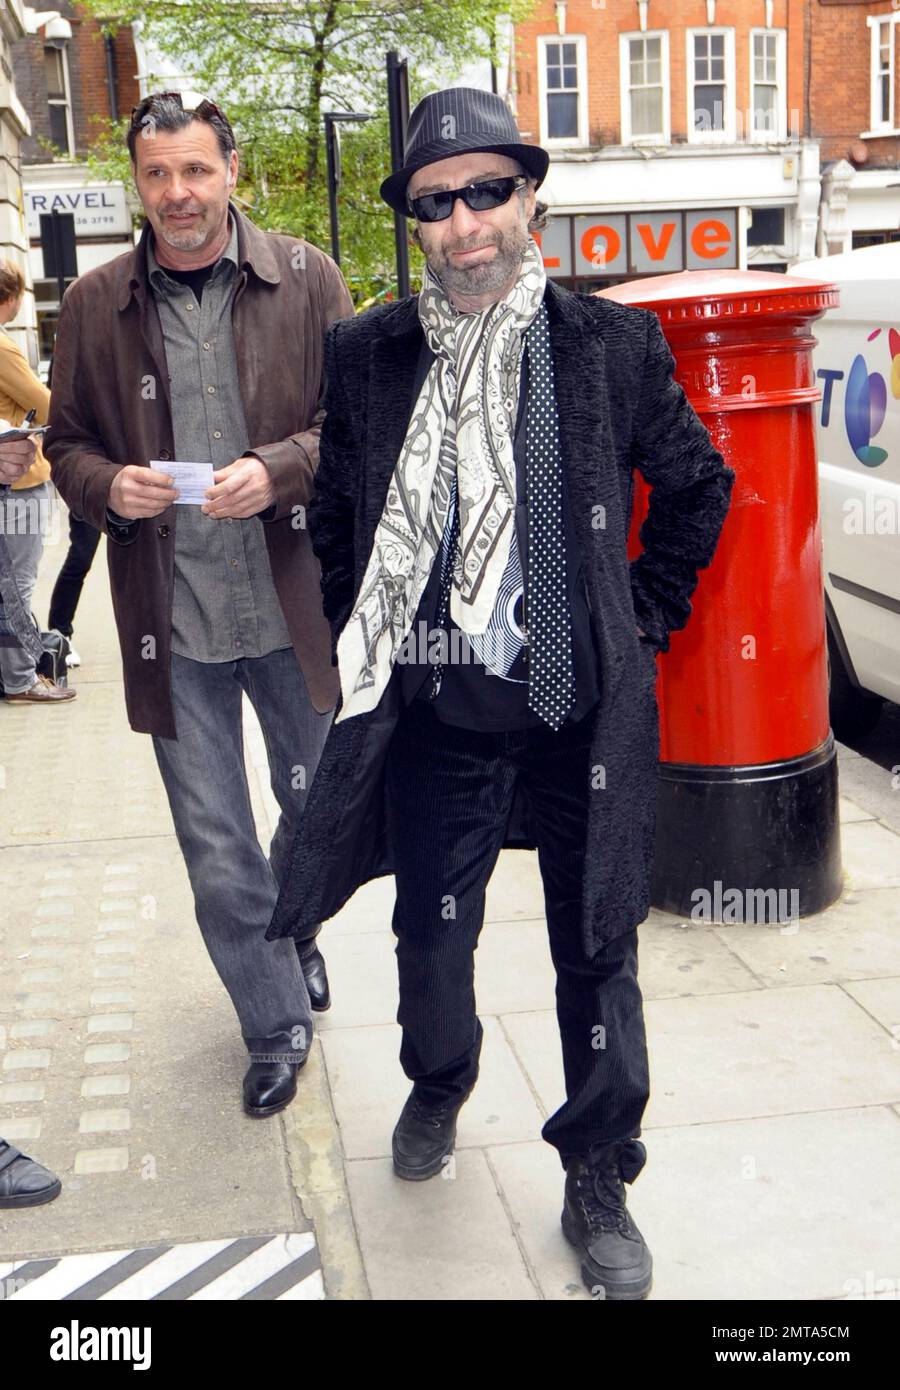 Le chanteur Paul Rodgers, connu pour son travail avec les groupes  légendaires Free, Bad Company et Now Queen, porte un foulard à motif  flamboyant et une cravate à pois noirs lorsqu'il pose